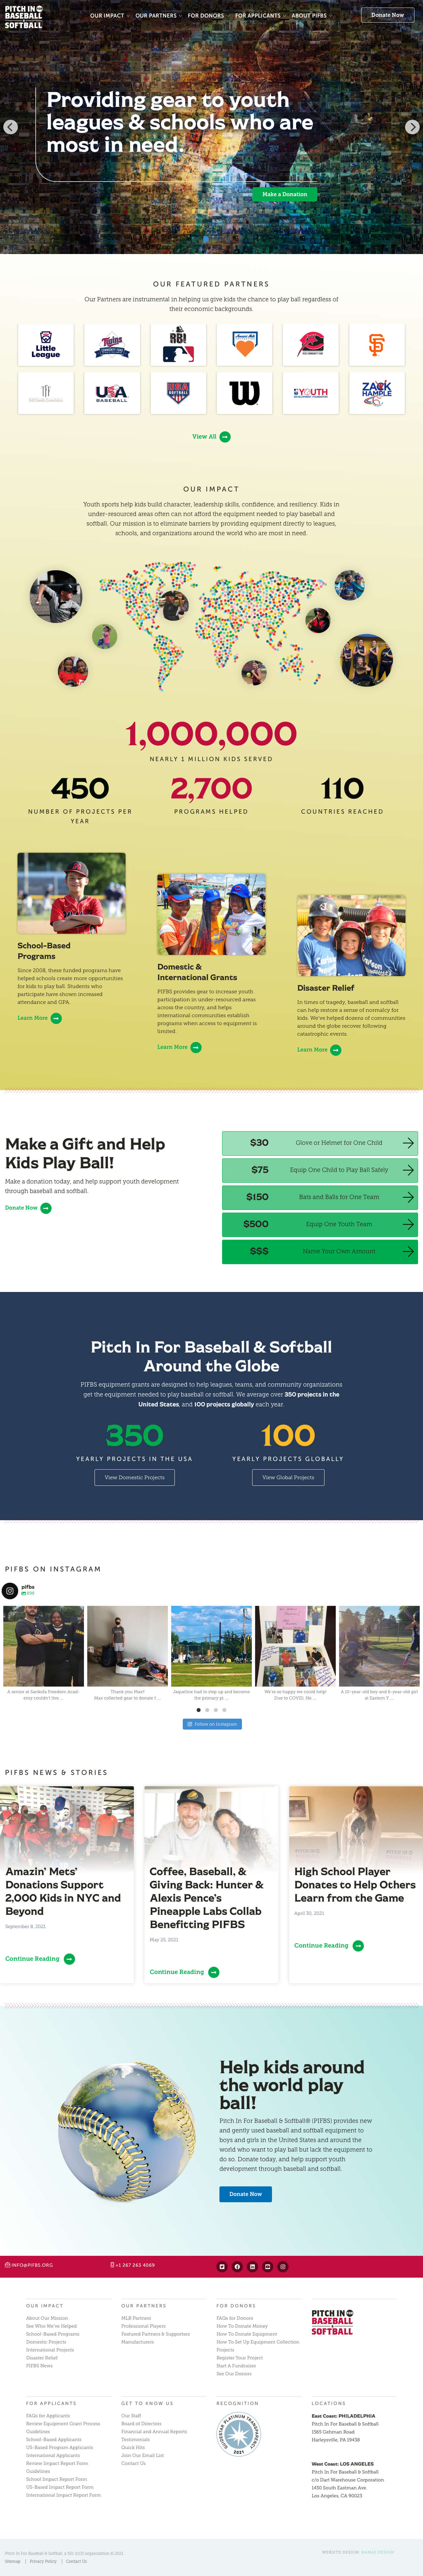 Vega Digital Awards Winner - Website Redesign for Pitch In For Baseball & Softball, Hanas Design